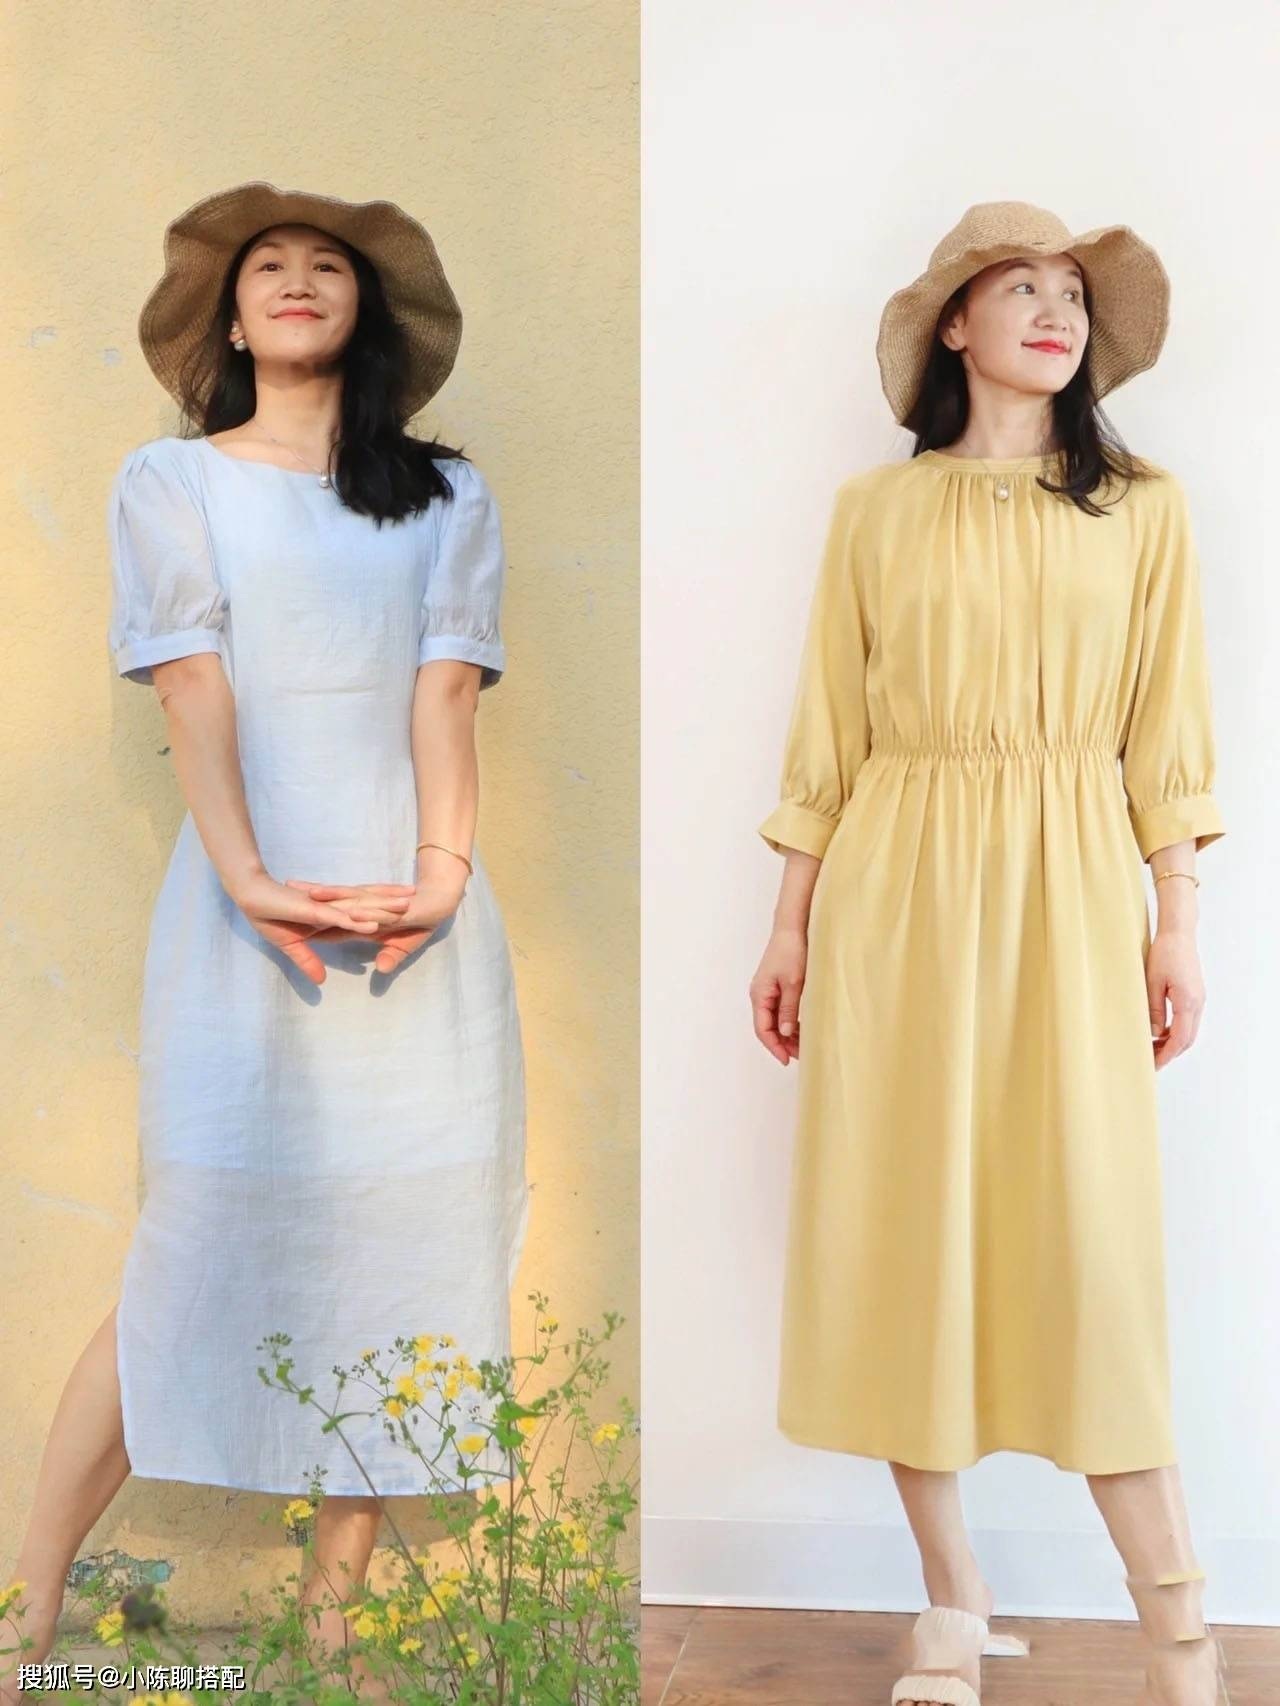 Cách chọn trang phục phù hợp cho phụ nữ tuổi 50 không giả vờ dịu dàng hay  cổ điển mà đơn giản thanh lịch và thời trang  Thời trang  Việt